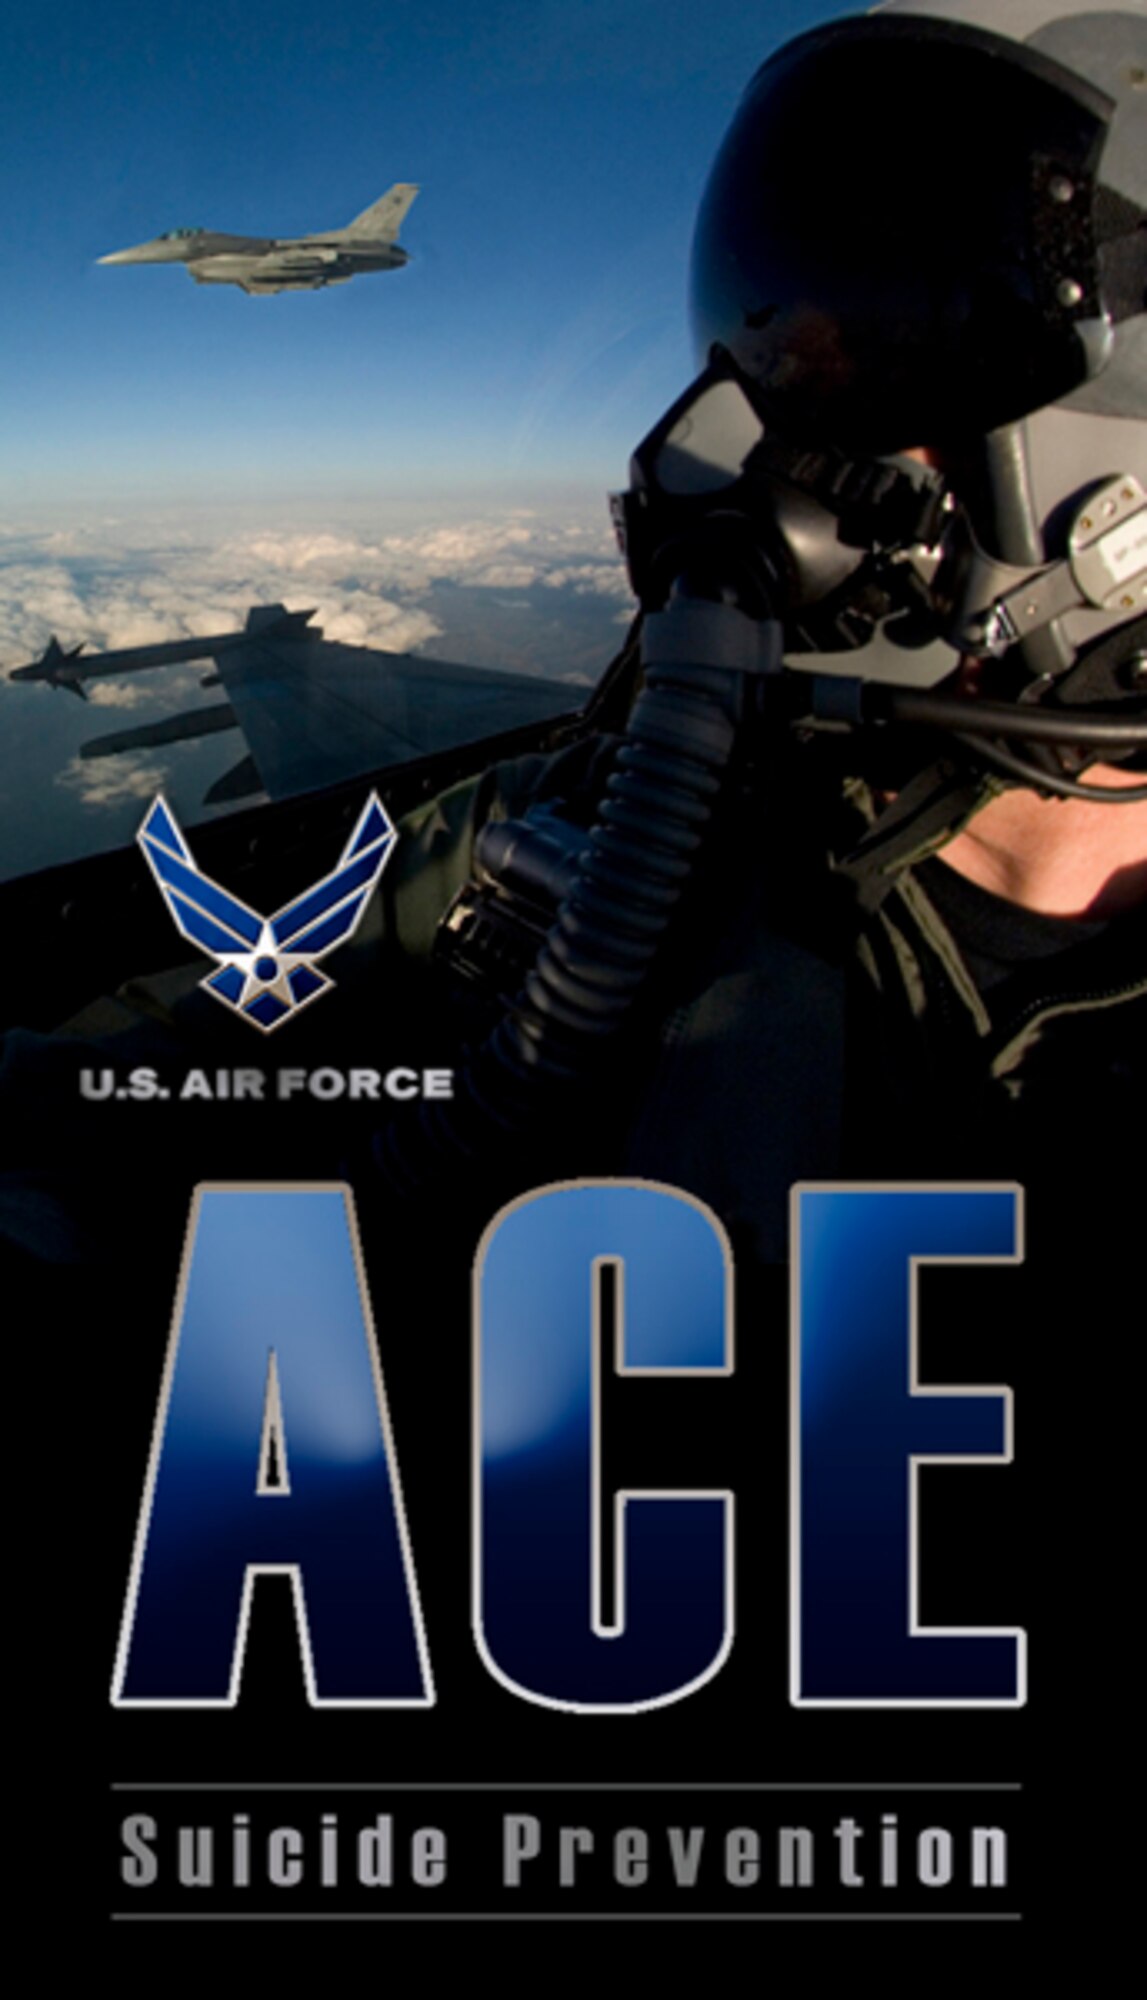 ACE program